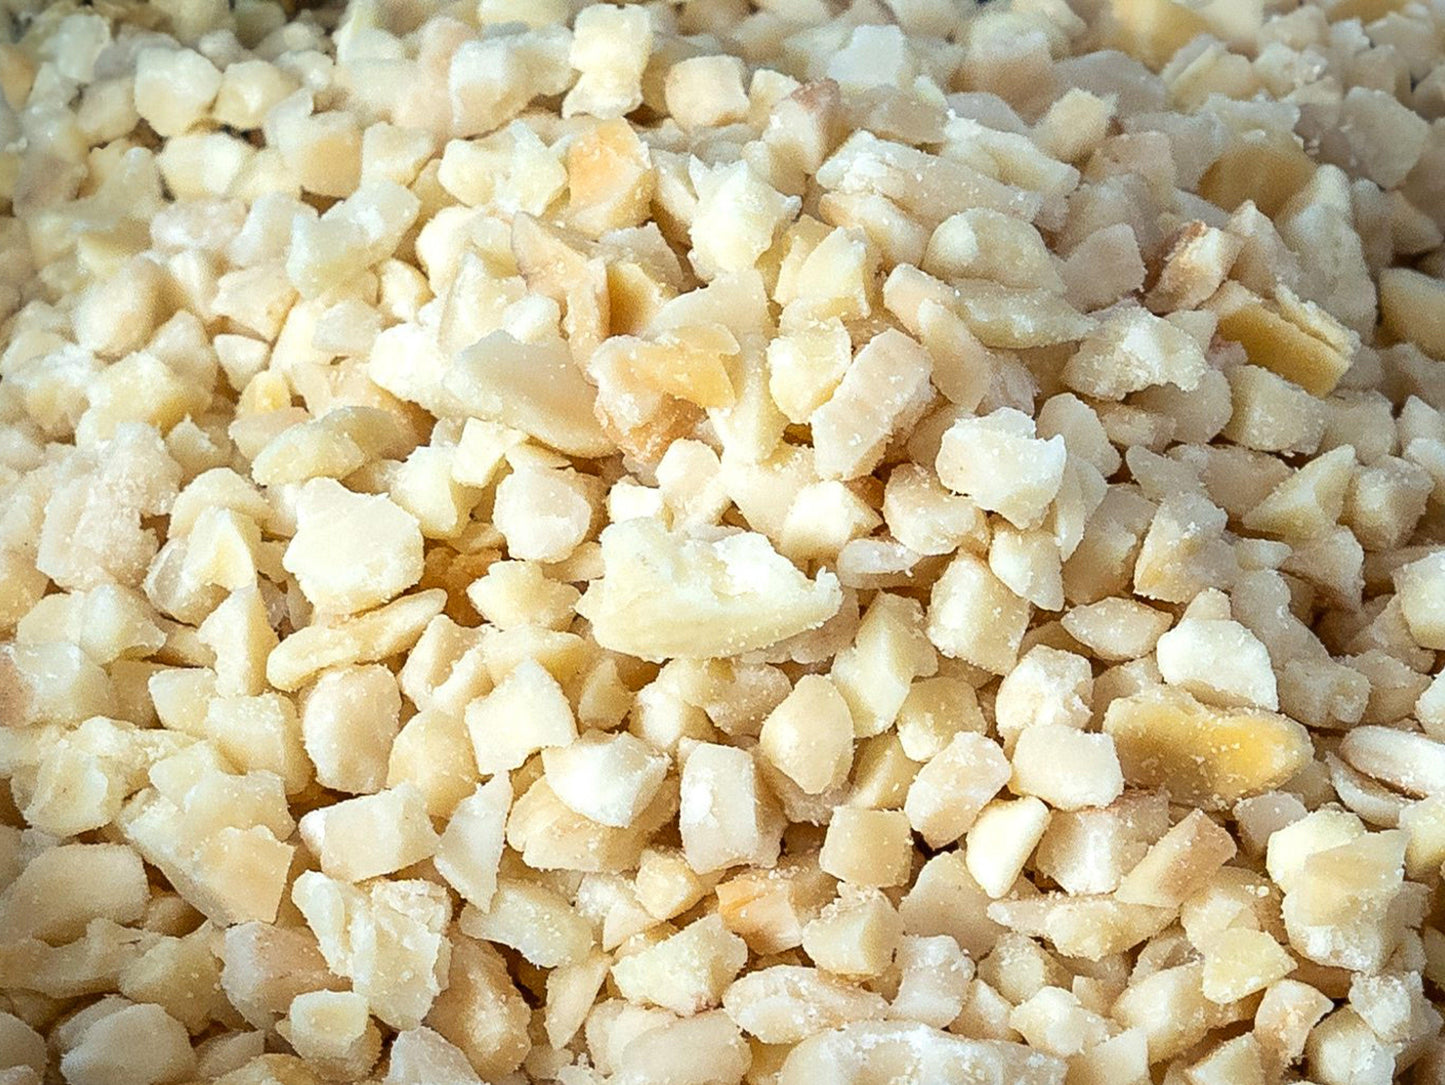 Amendoim Granulado ao Natural (sem pele) - Casca Rija